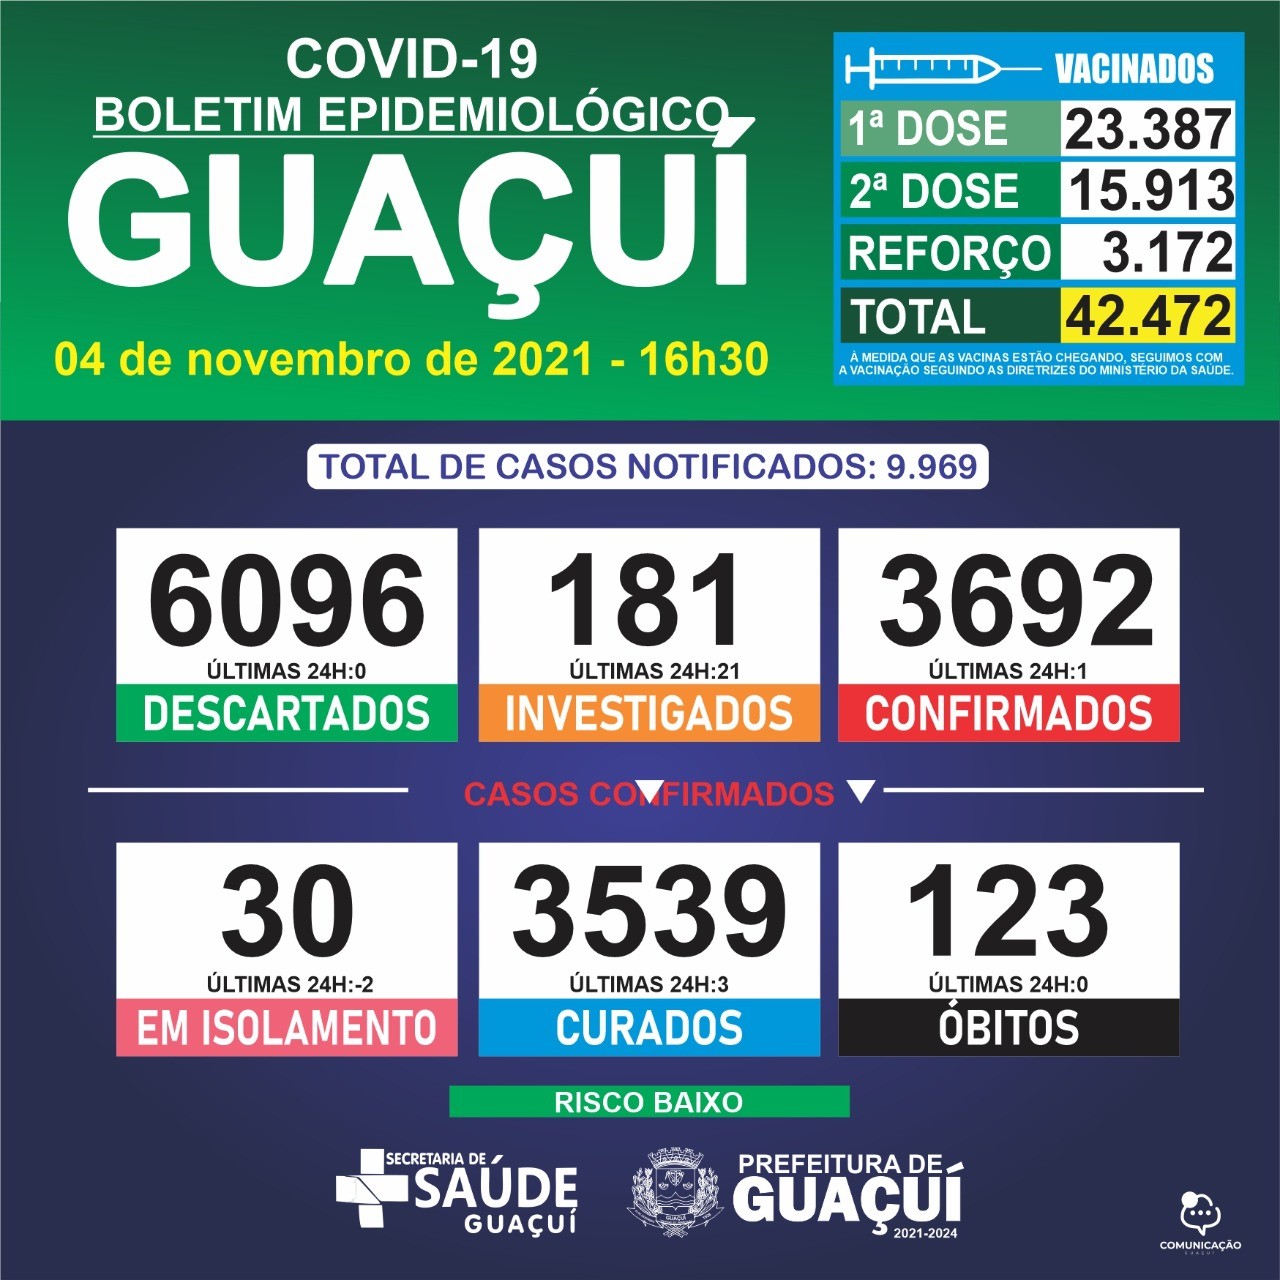 Boletim Epidemiológico 04/11/2021: Guaçuí registra 01 caso confirmado e 03 curados nas últimas 24 horas